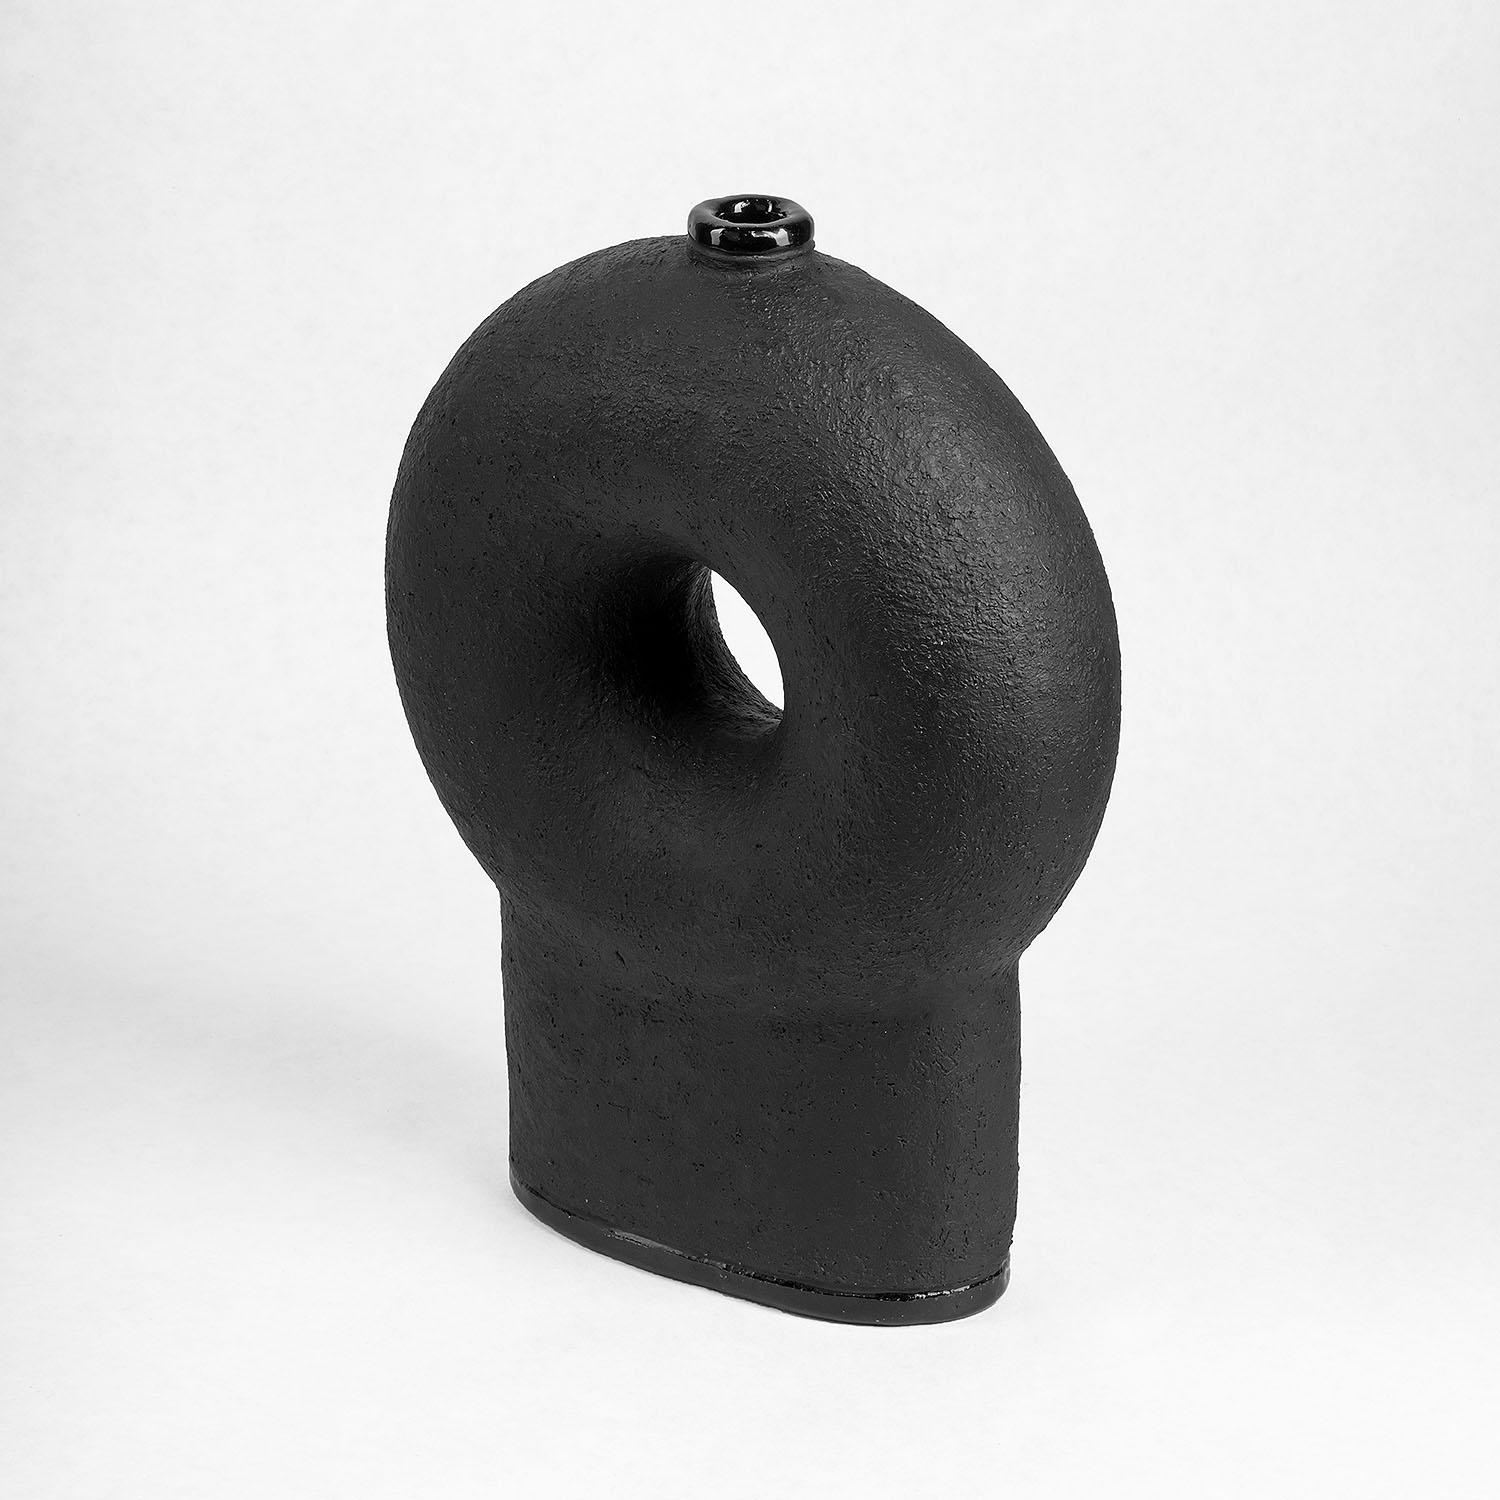 Vase contemporain en céramique noire sculptée - Vase à deux pieds Kumanec de Faina

Design : Victoriya Yakusha
Matériau : Matériau : argile / céramique
Dimensions : 10,7 x 24 x 33 cm : 10,7 x 24 x 33 cm


(